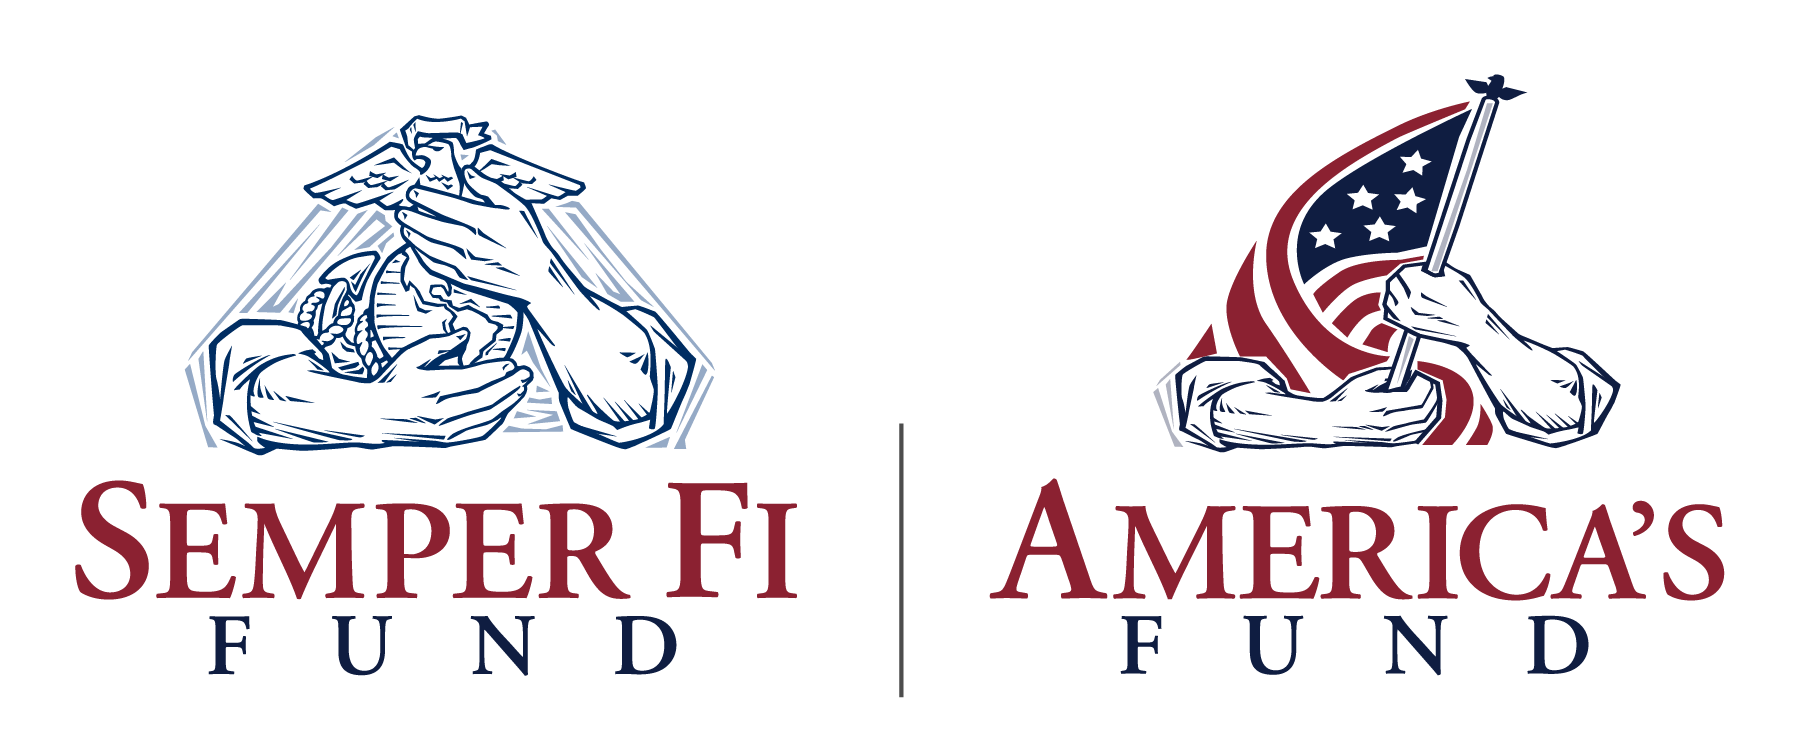 Team Semper Fi Logo - Team Semper Fi America Fund | The Hartford Ski Spectacular